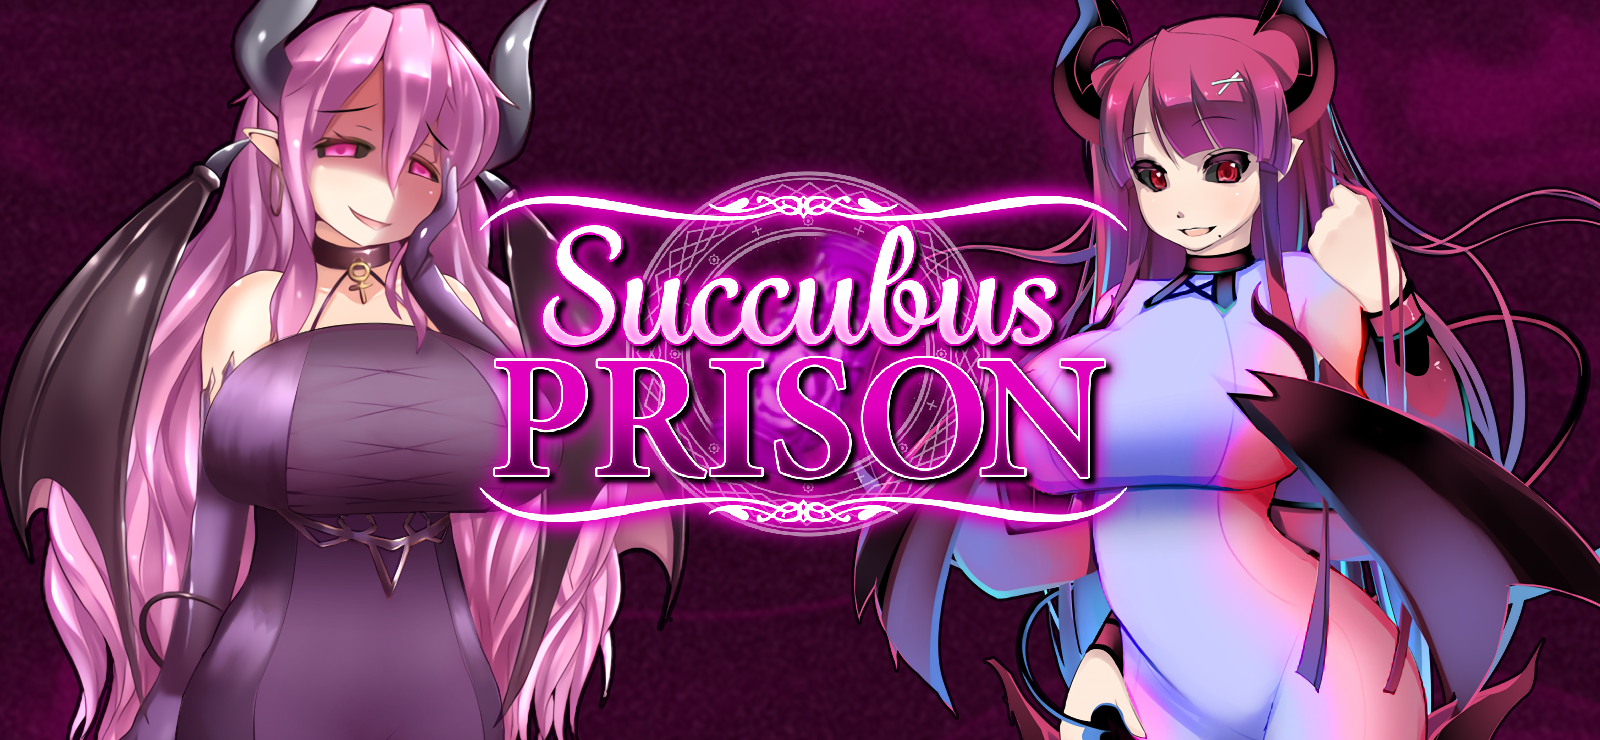 Succubus Prison